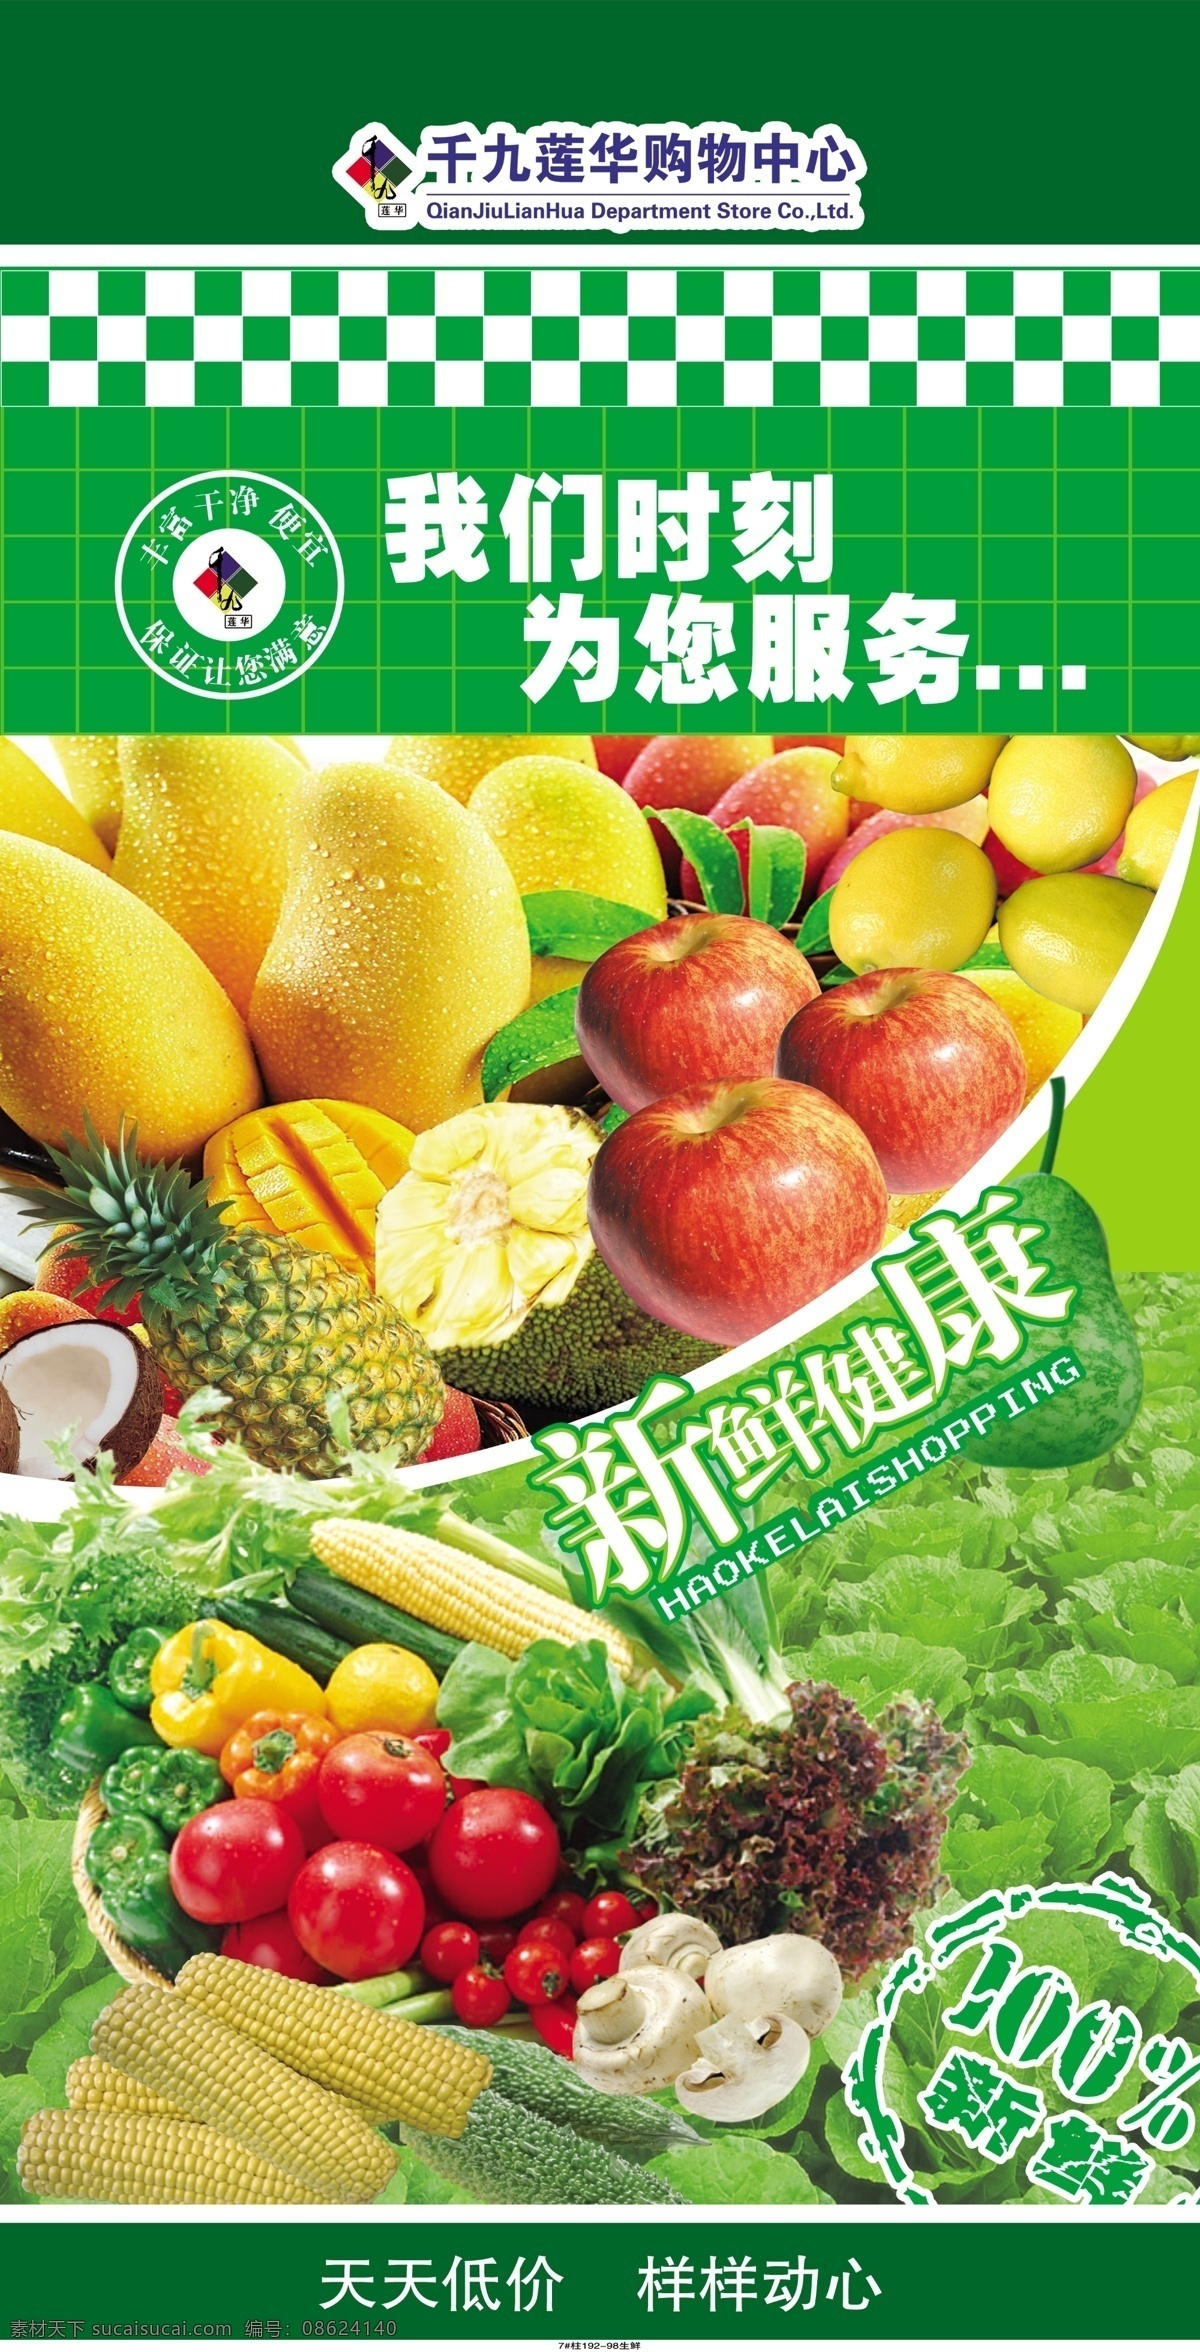 超市 超市柱子 广告设计模板 健康 苹果 其他模版 柱子 水果 新鲜 天天低价 食品 我们 时刻 为您服务 样样动心 源文件 其他海报设计